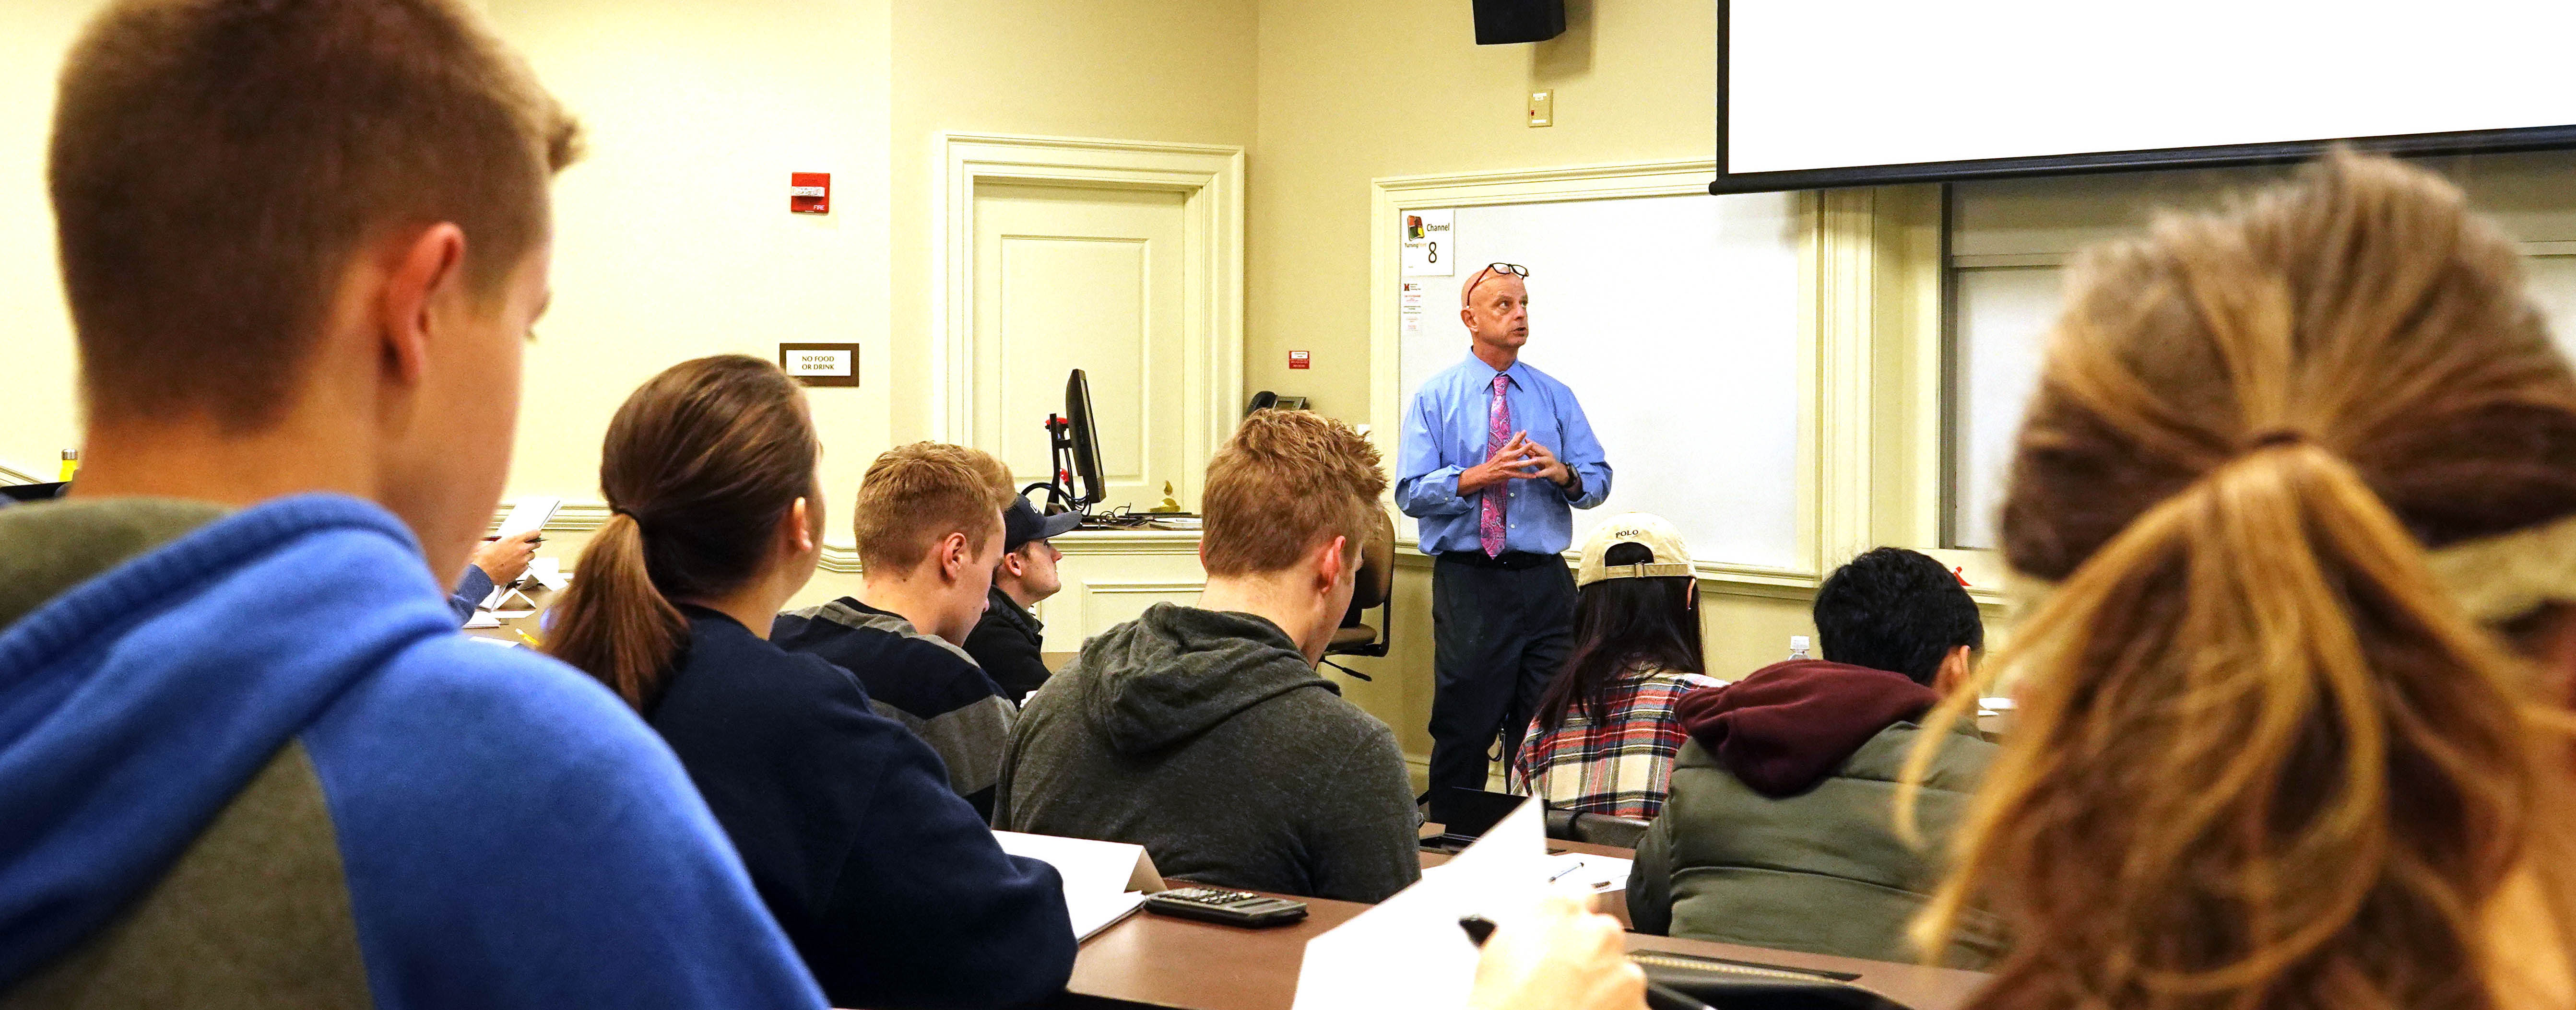  Terry Nixon teaches a finance class